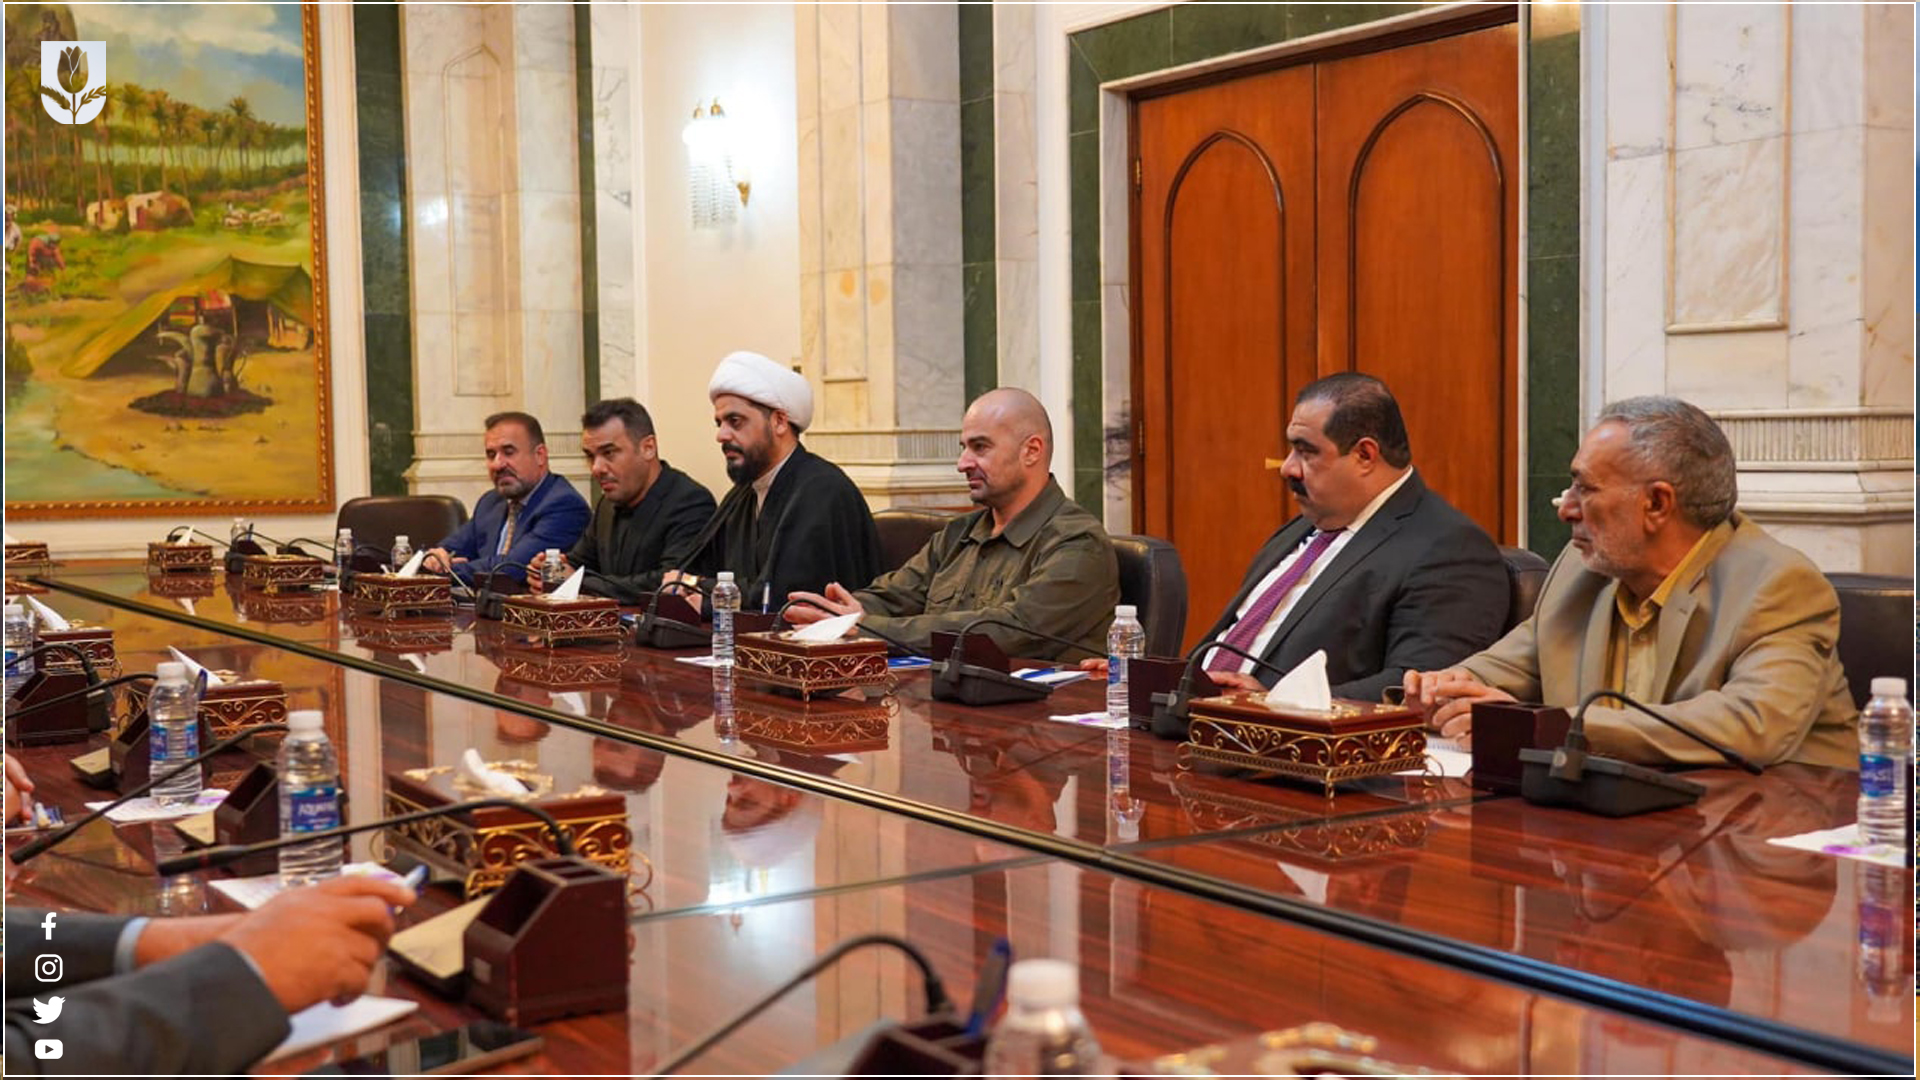   اجتماع الرئيس بافل جلال طالباني مع الاطراف السياسية 